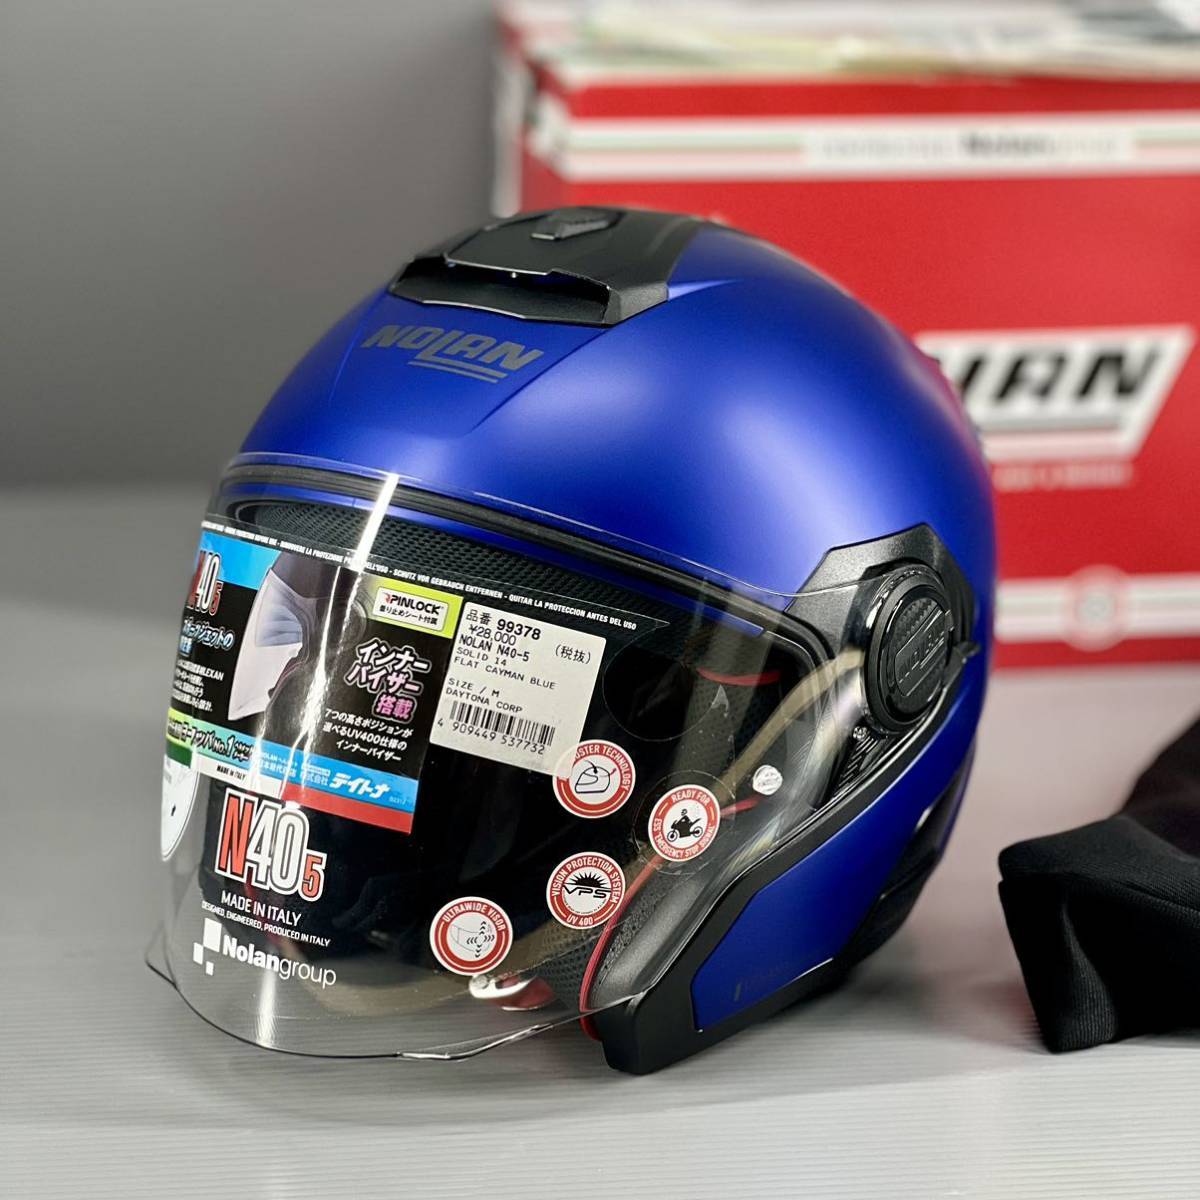 《展示品》NOLAN ノーラン N405 フラットケイマンブルー ジェットヘルメット Mサイズ (DAYTONA 99378)_画像1